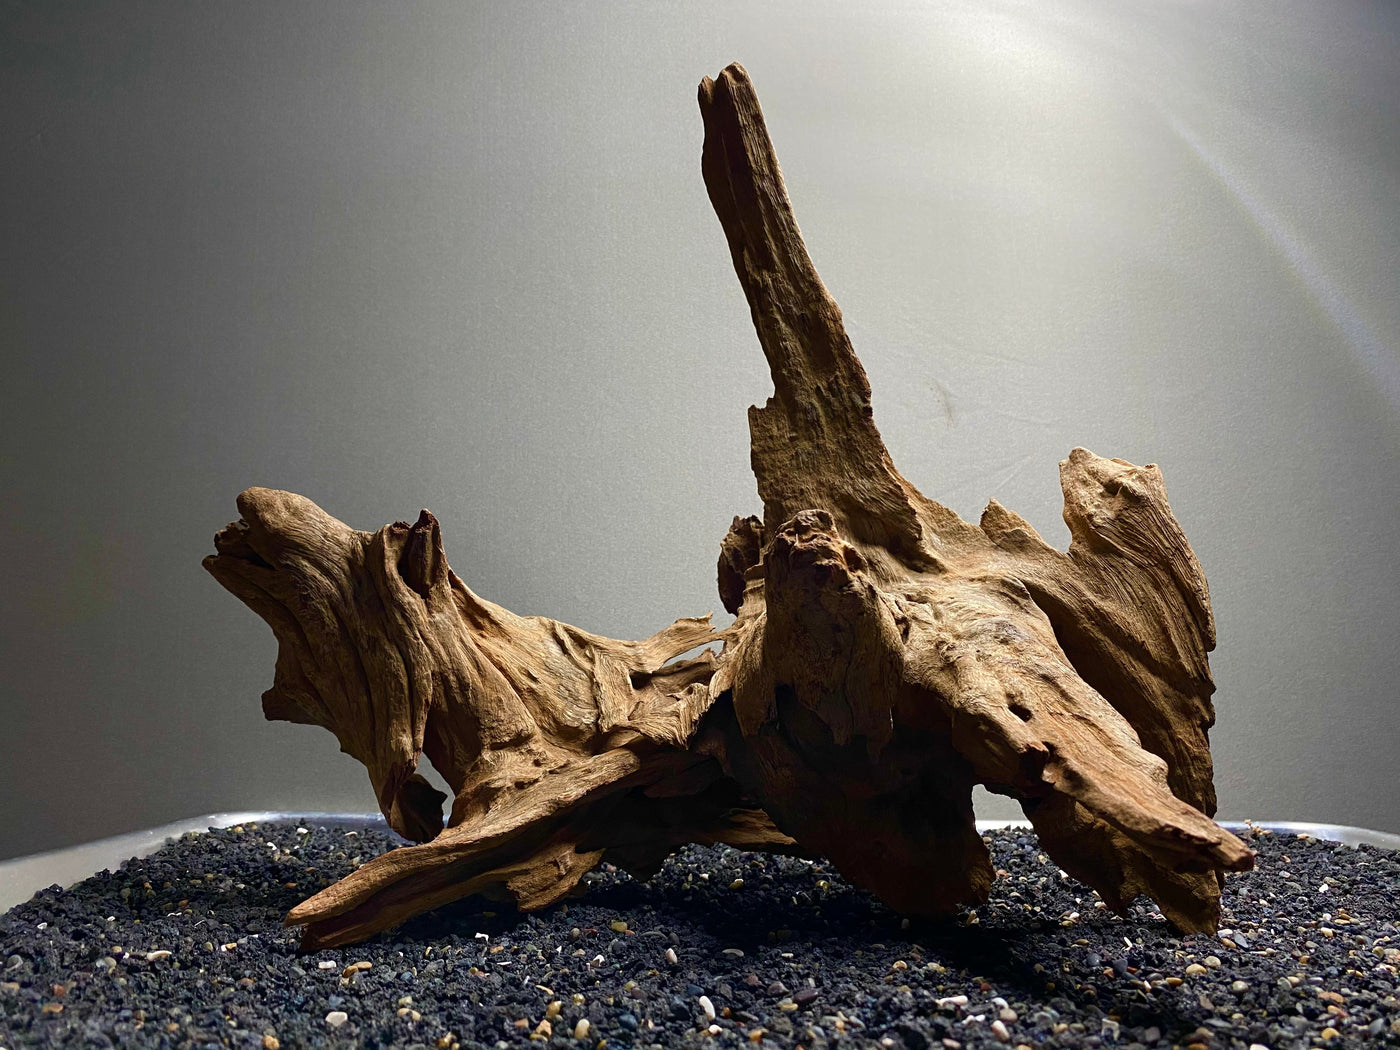 Malaysian Driftwood Showpiece Sculpture "Zeus' Trident"